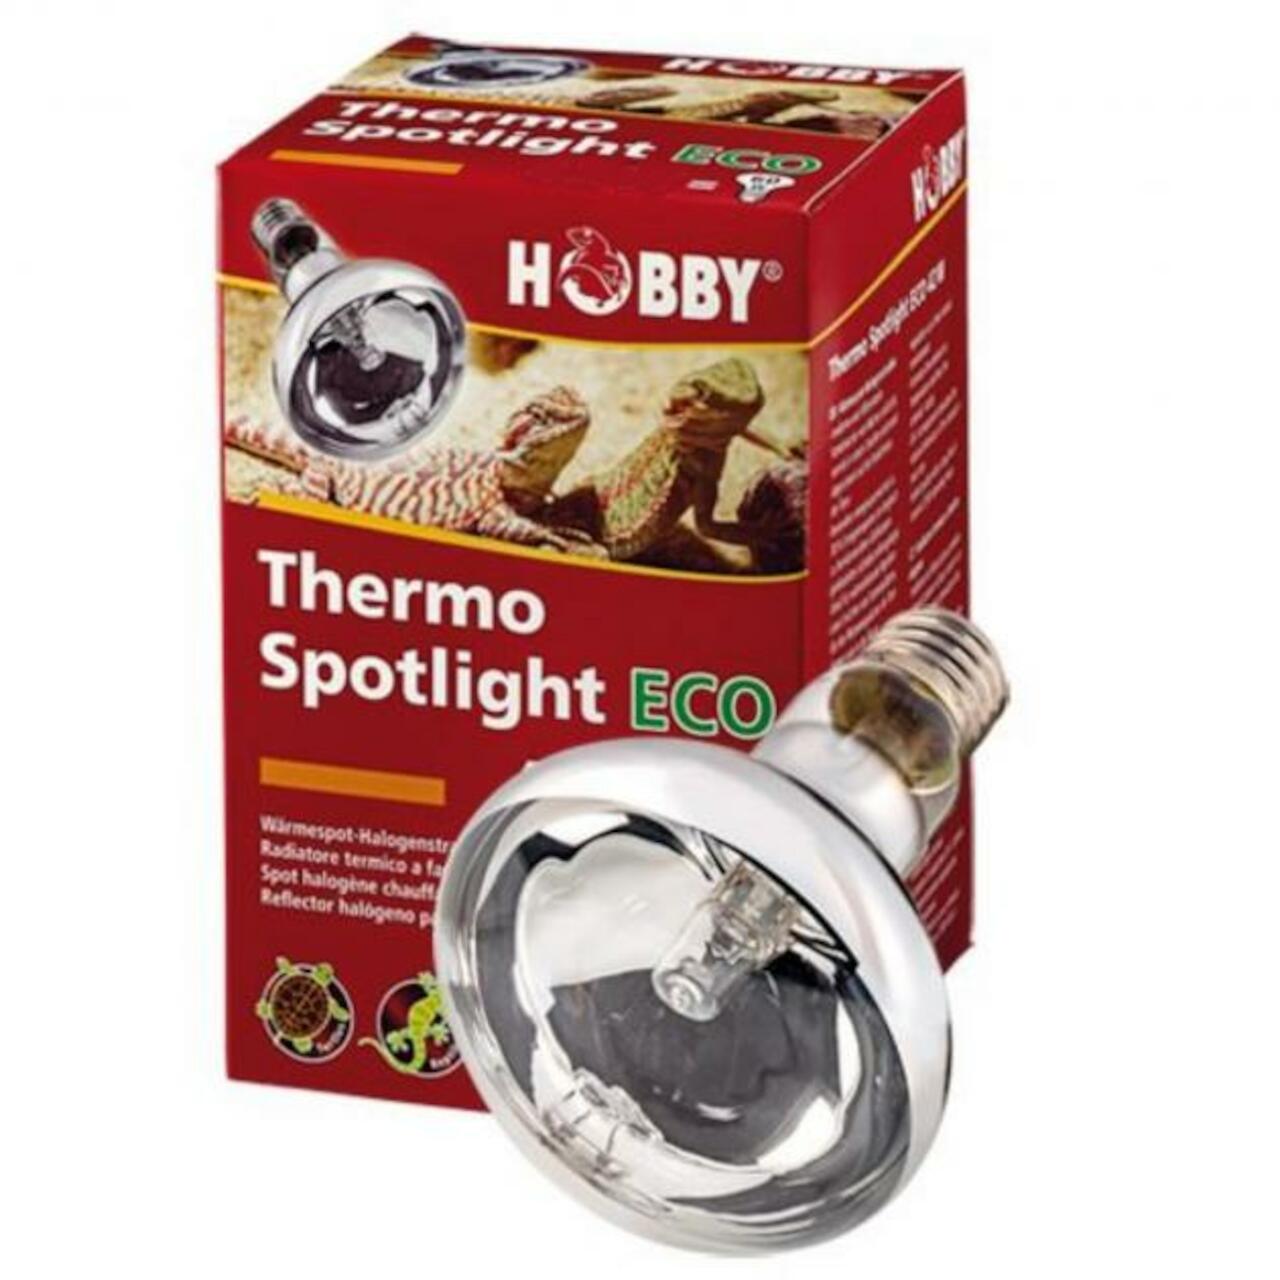 Hobby Thermo Spotlight Eco 108 W